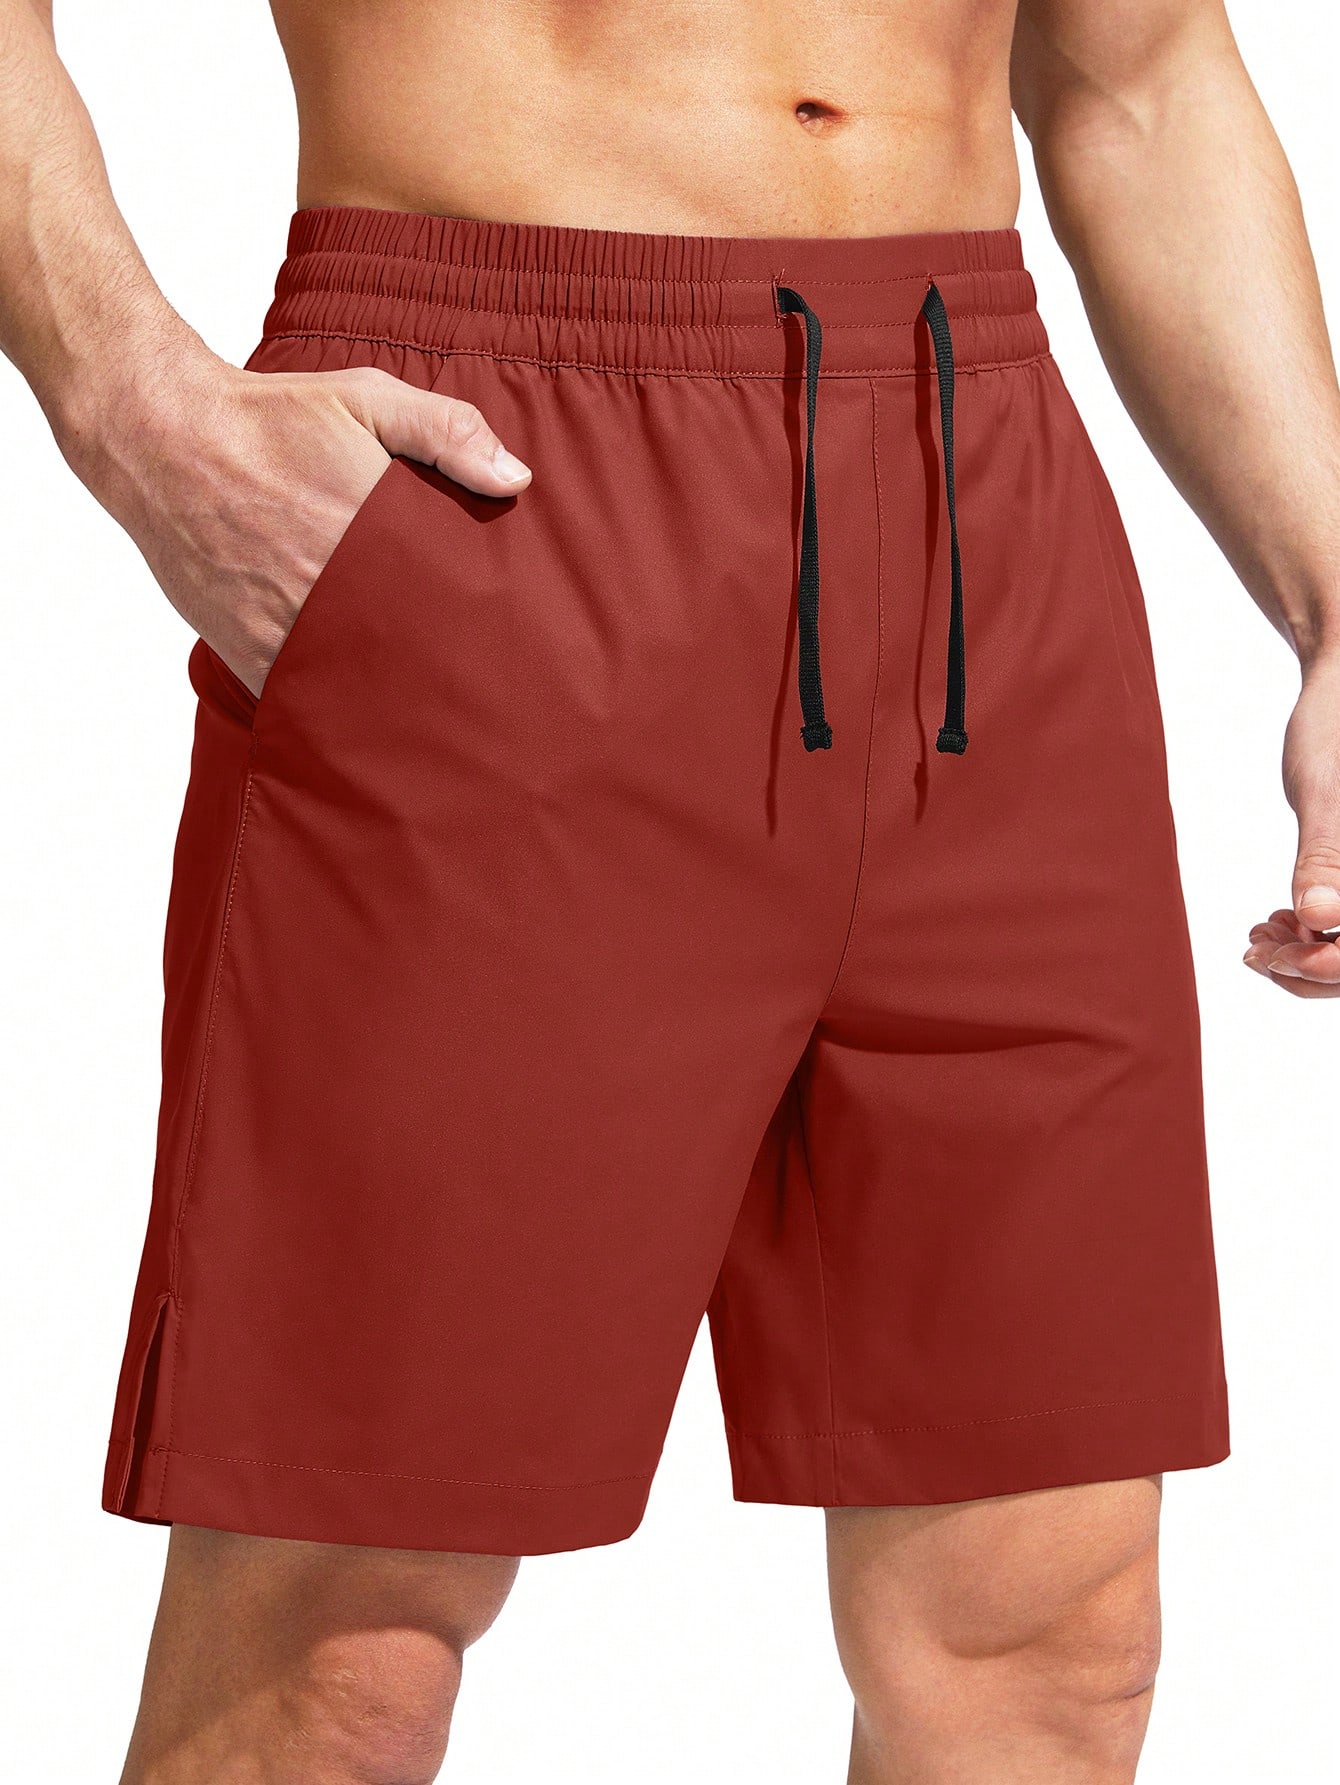 G Gradual G Gradual Мужские плавки Быстросохнущий купальный костюм Пляжные шорты для мужчин с карманами на молнии и сетчатой ​​подкладкой Серые шорты, красный